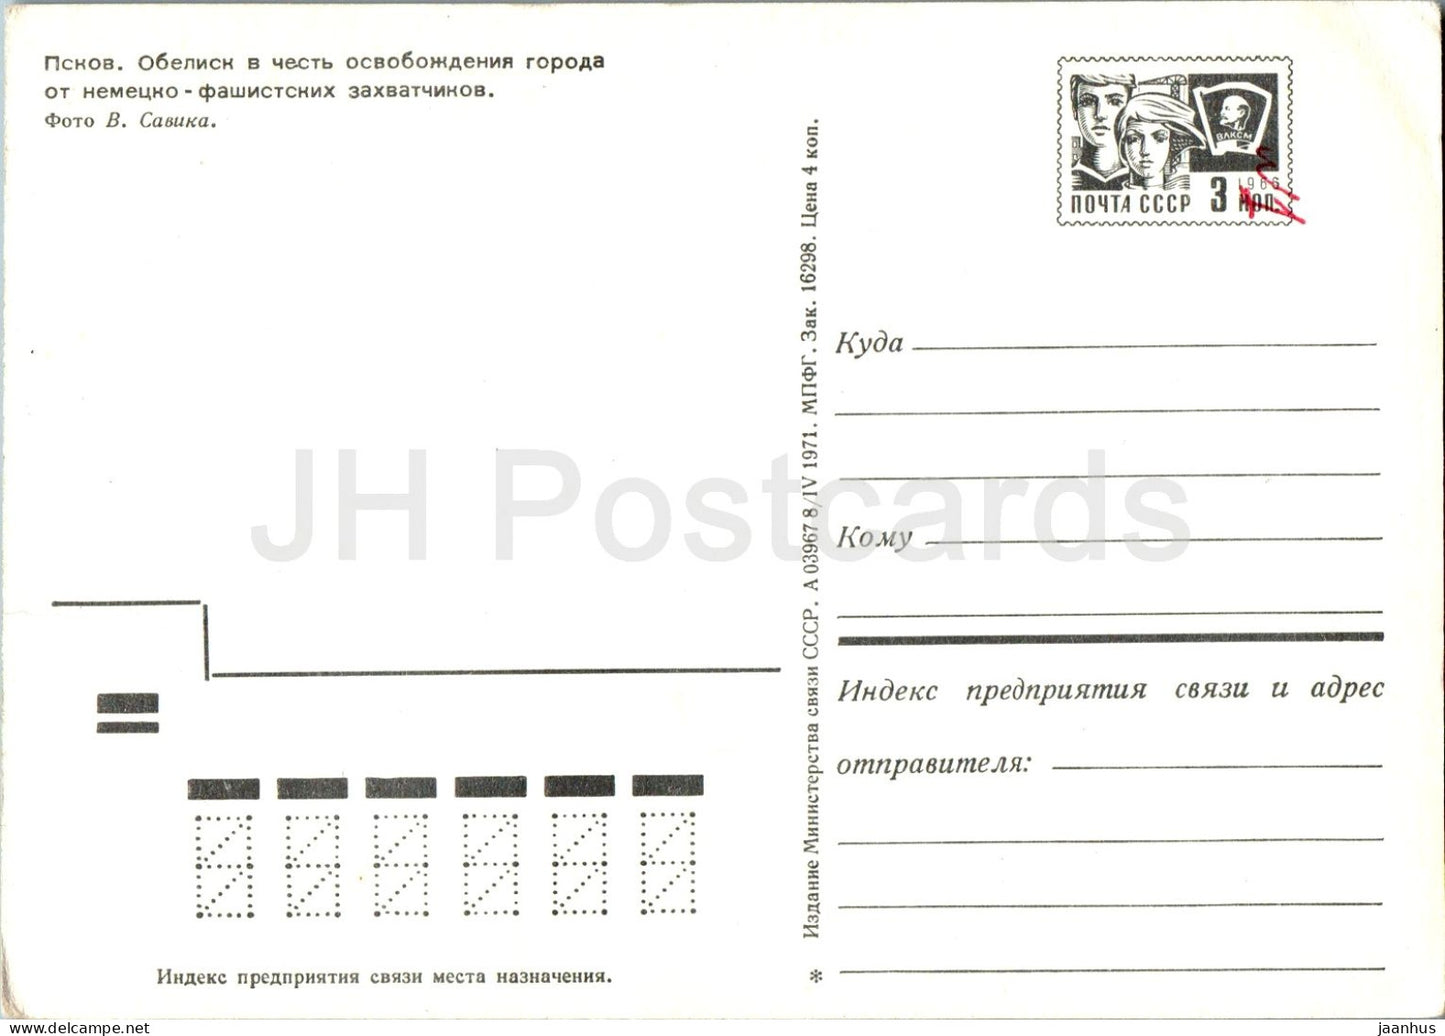 Pskov - obélisque en l'honneur de la libération de la ville - char - entier postal militaire - 1971 - Russie URSS - inutilisé 